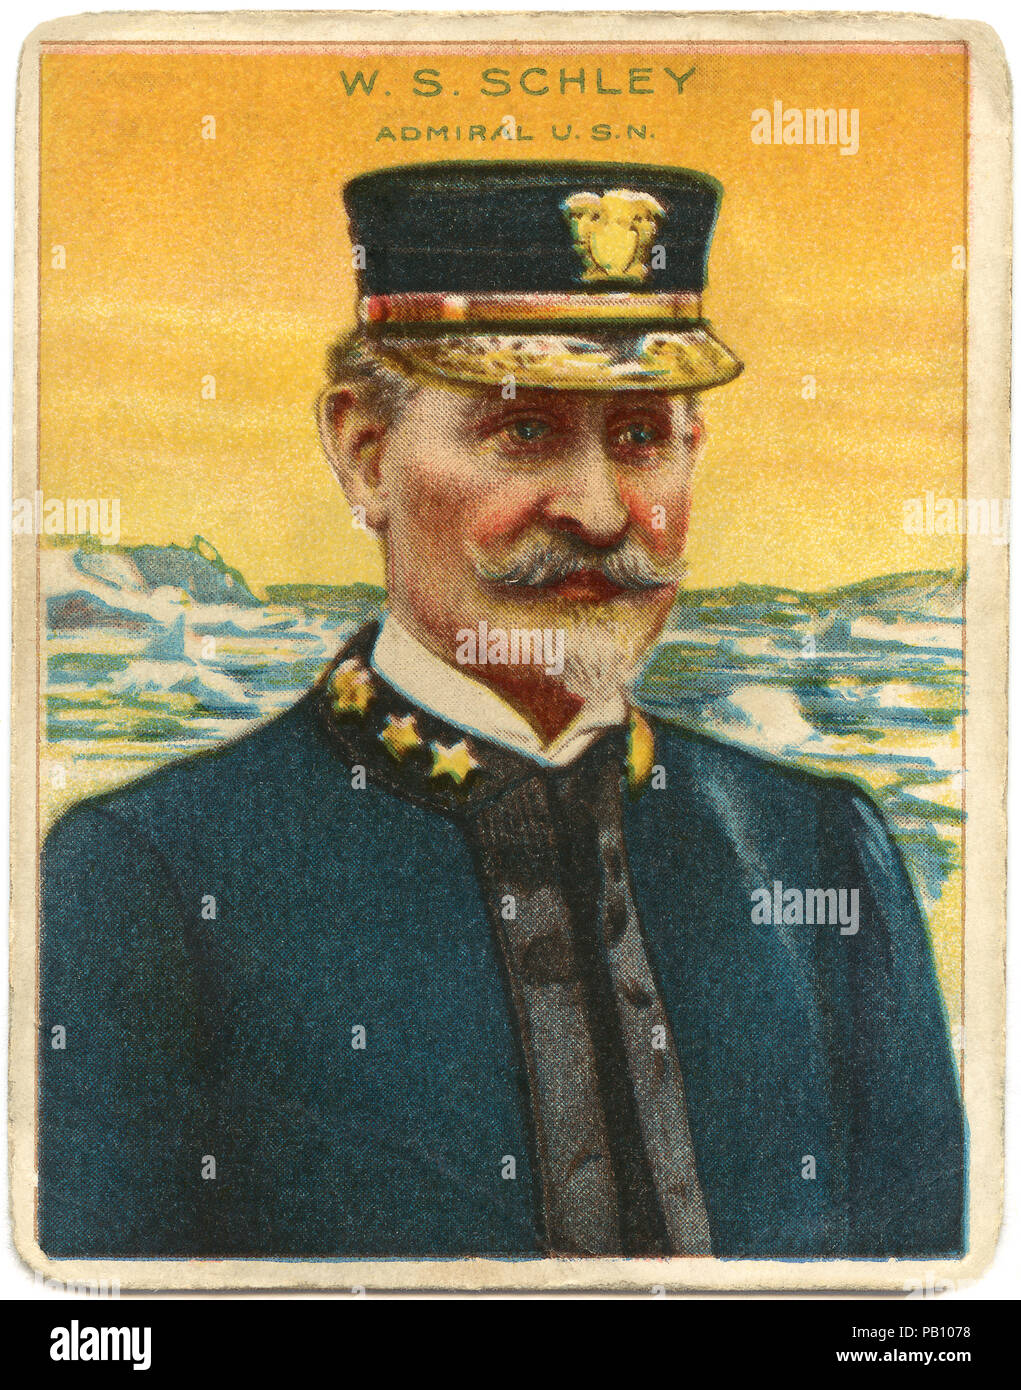 Winfield Scott Schley (1839-1911), Contre-amiral dans la Marine américaine, héros de la bataille de Santiago de Cuba pendant la guerre hispano-américaine, Portrait, 1898 Banque D'Images